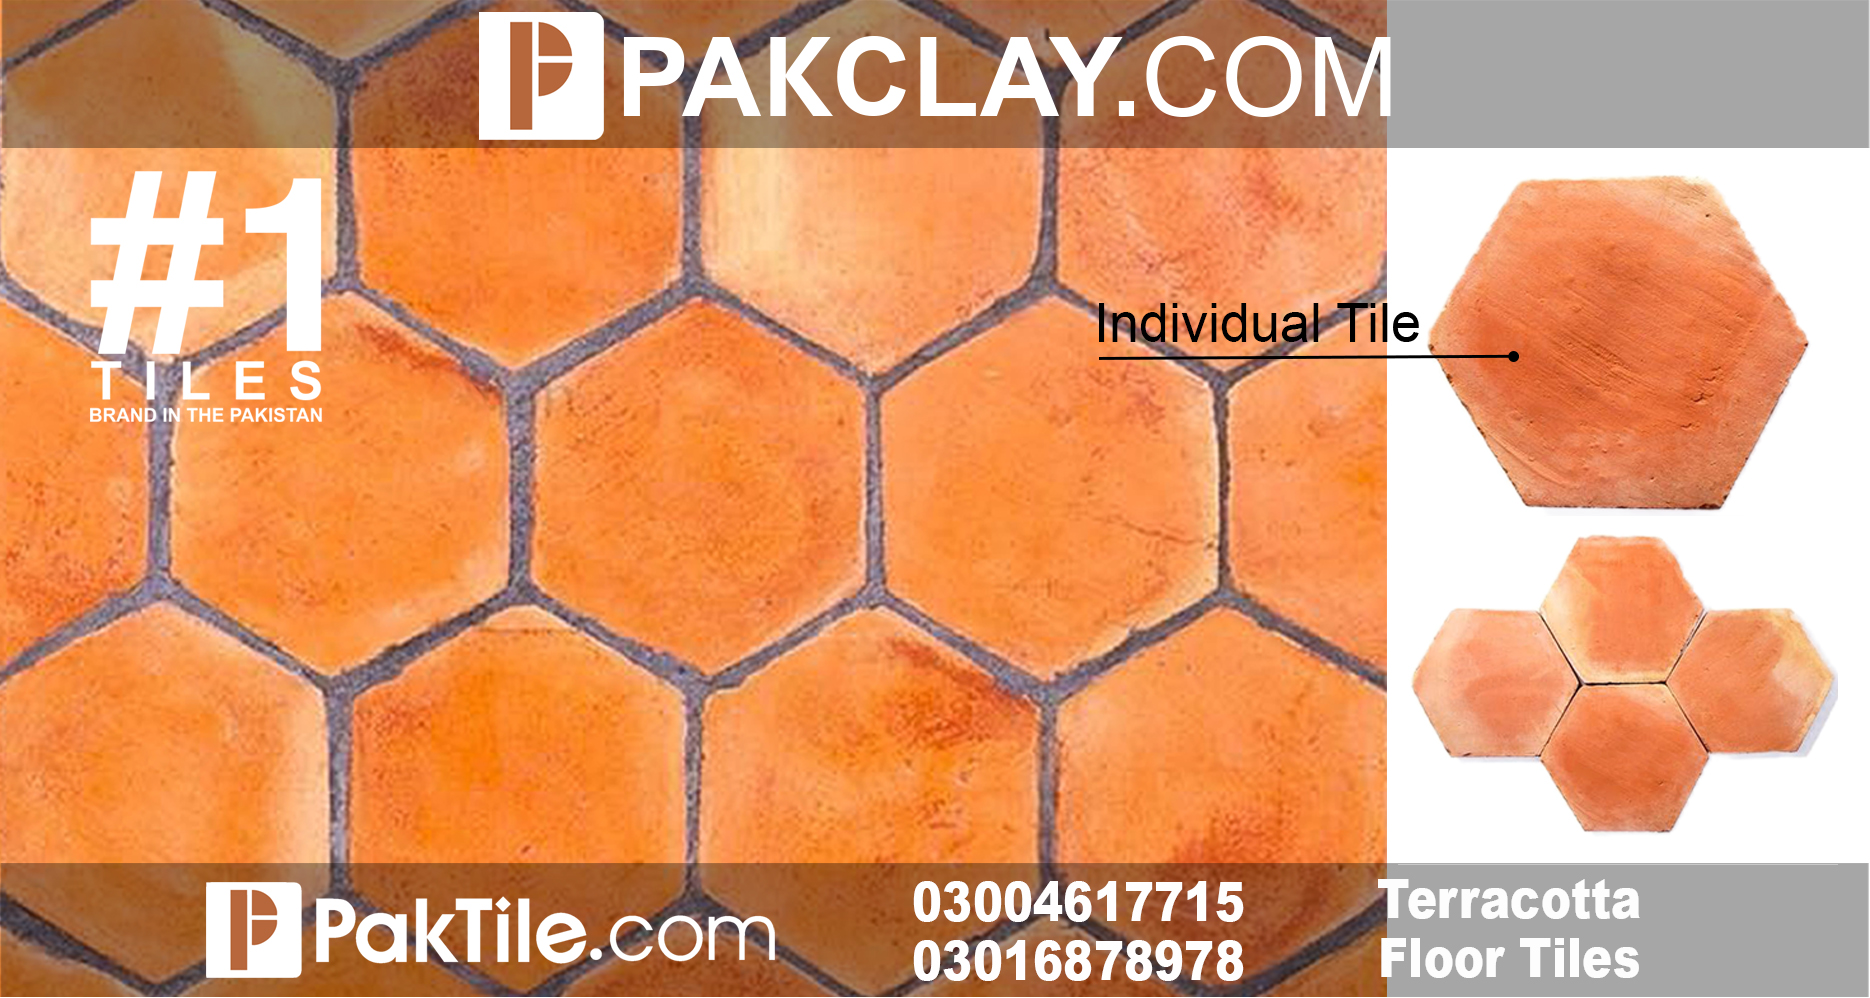 Hexagon Floor Tiles Price in Pakistan